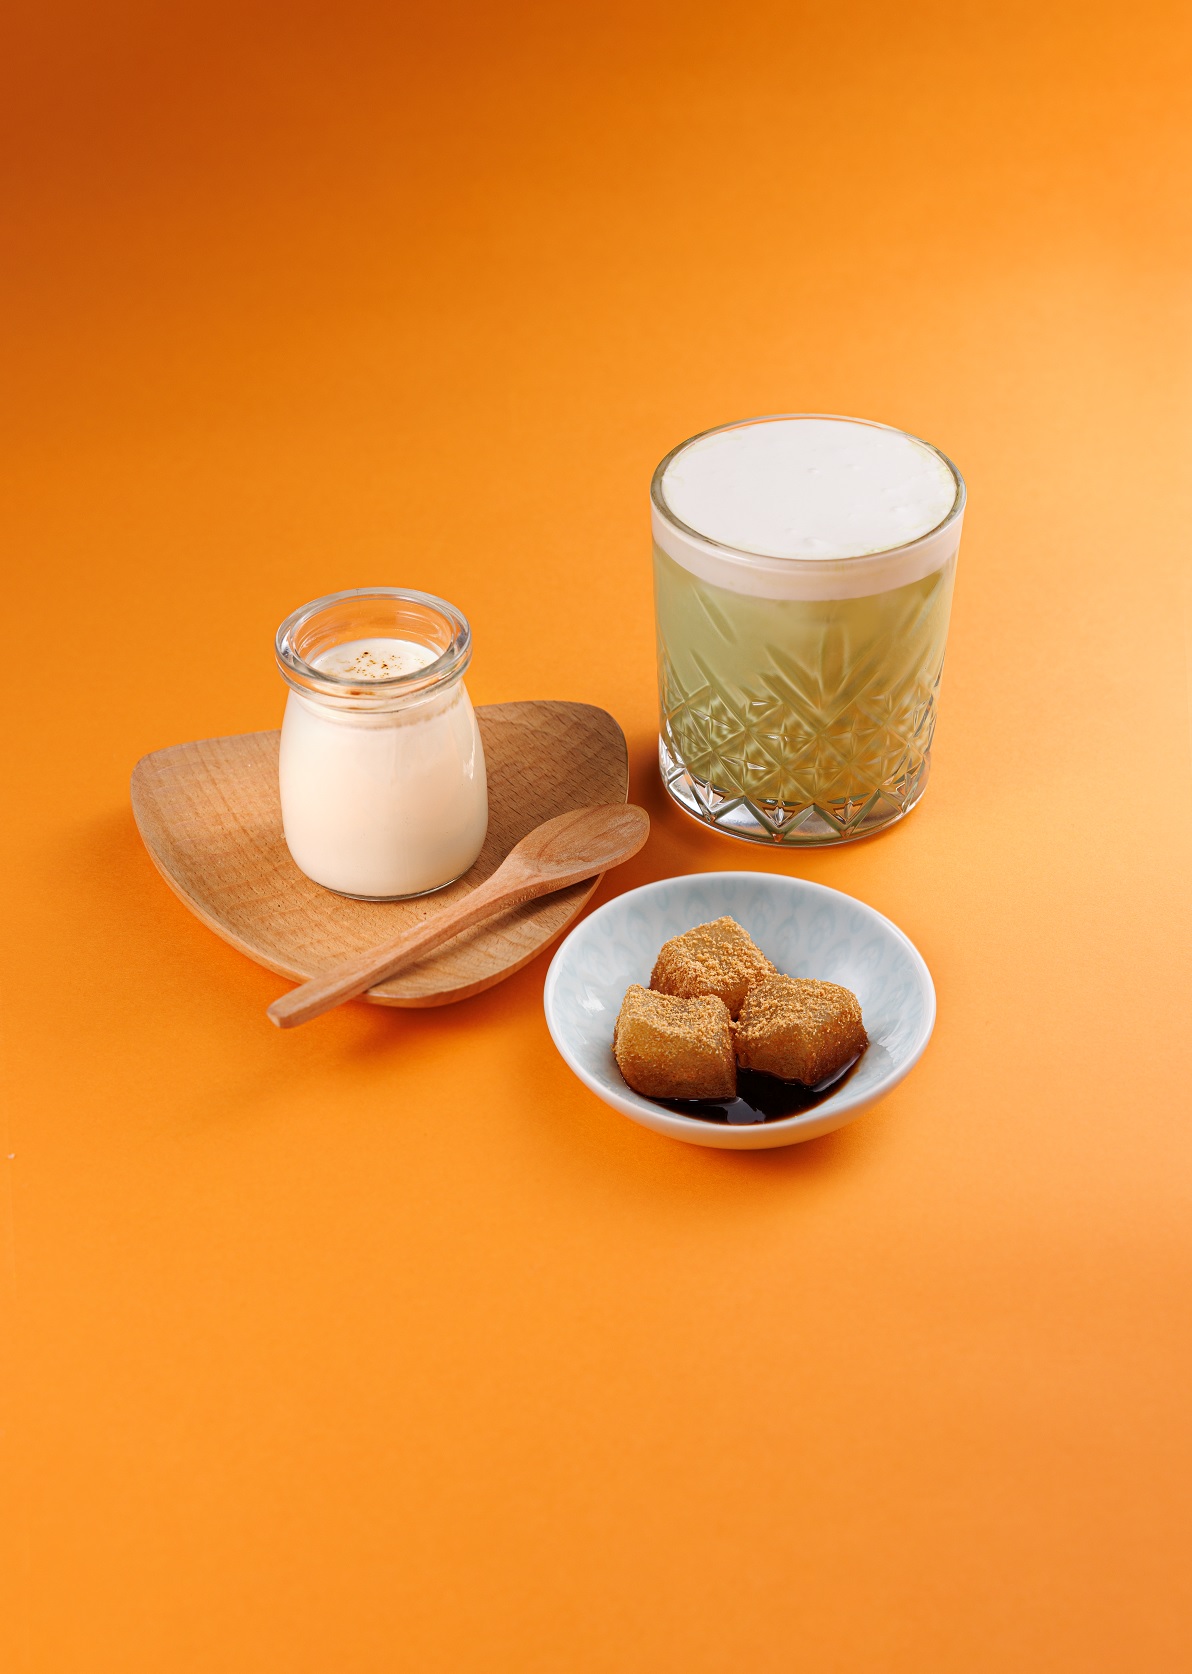 北海道牛乳布甸 Hokkaido Milk Pudding.jpg